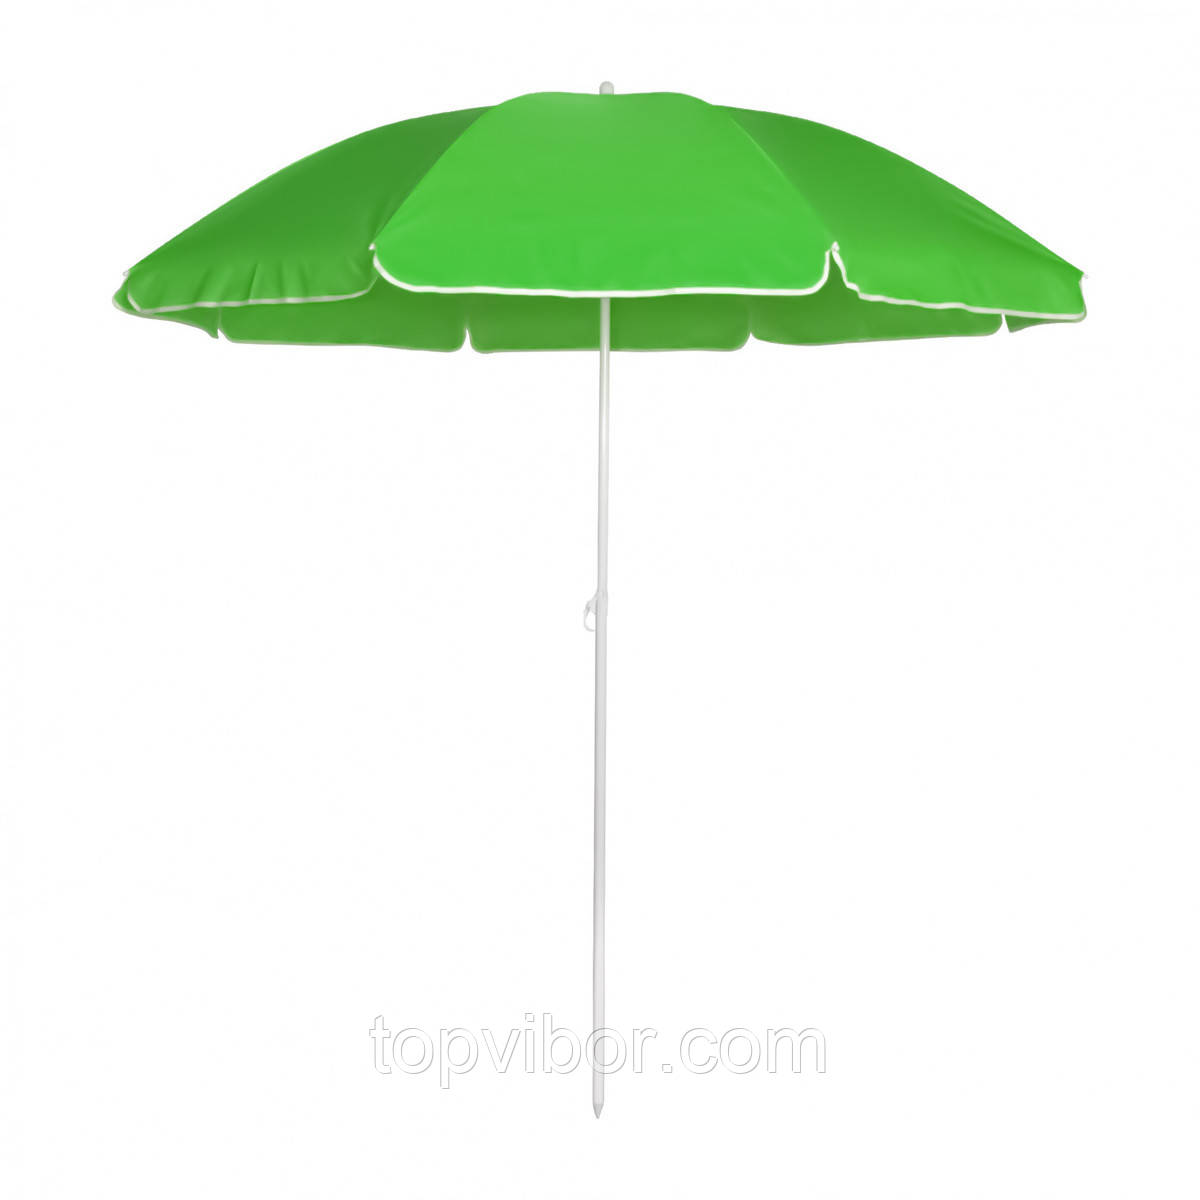 Зонтик для пляжа складной Stenson 1.8 м, Зеленый садовый зонт уличный без наклона (парасоль пляжна)